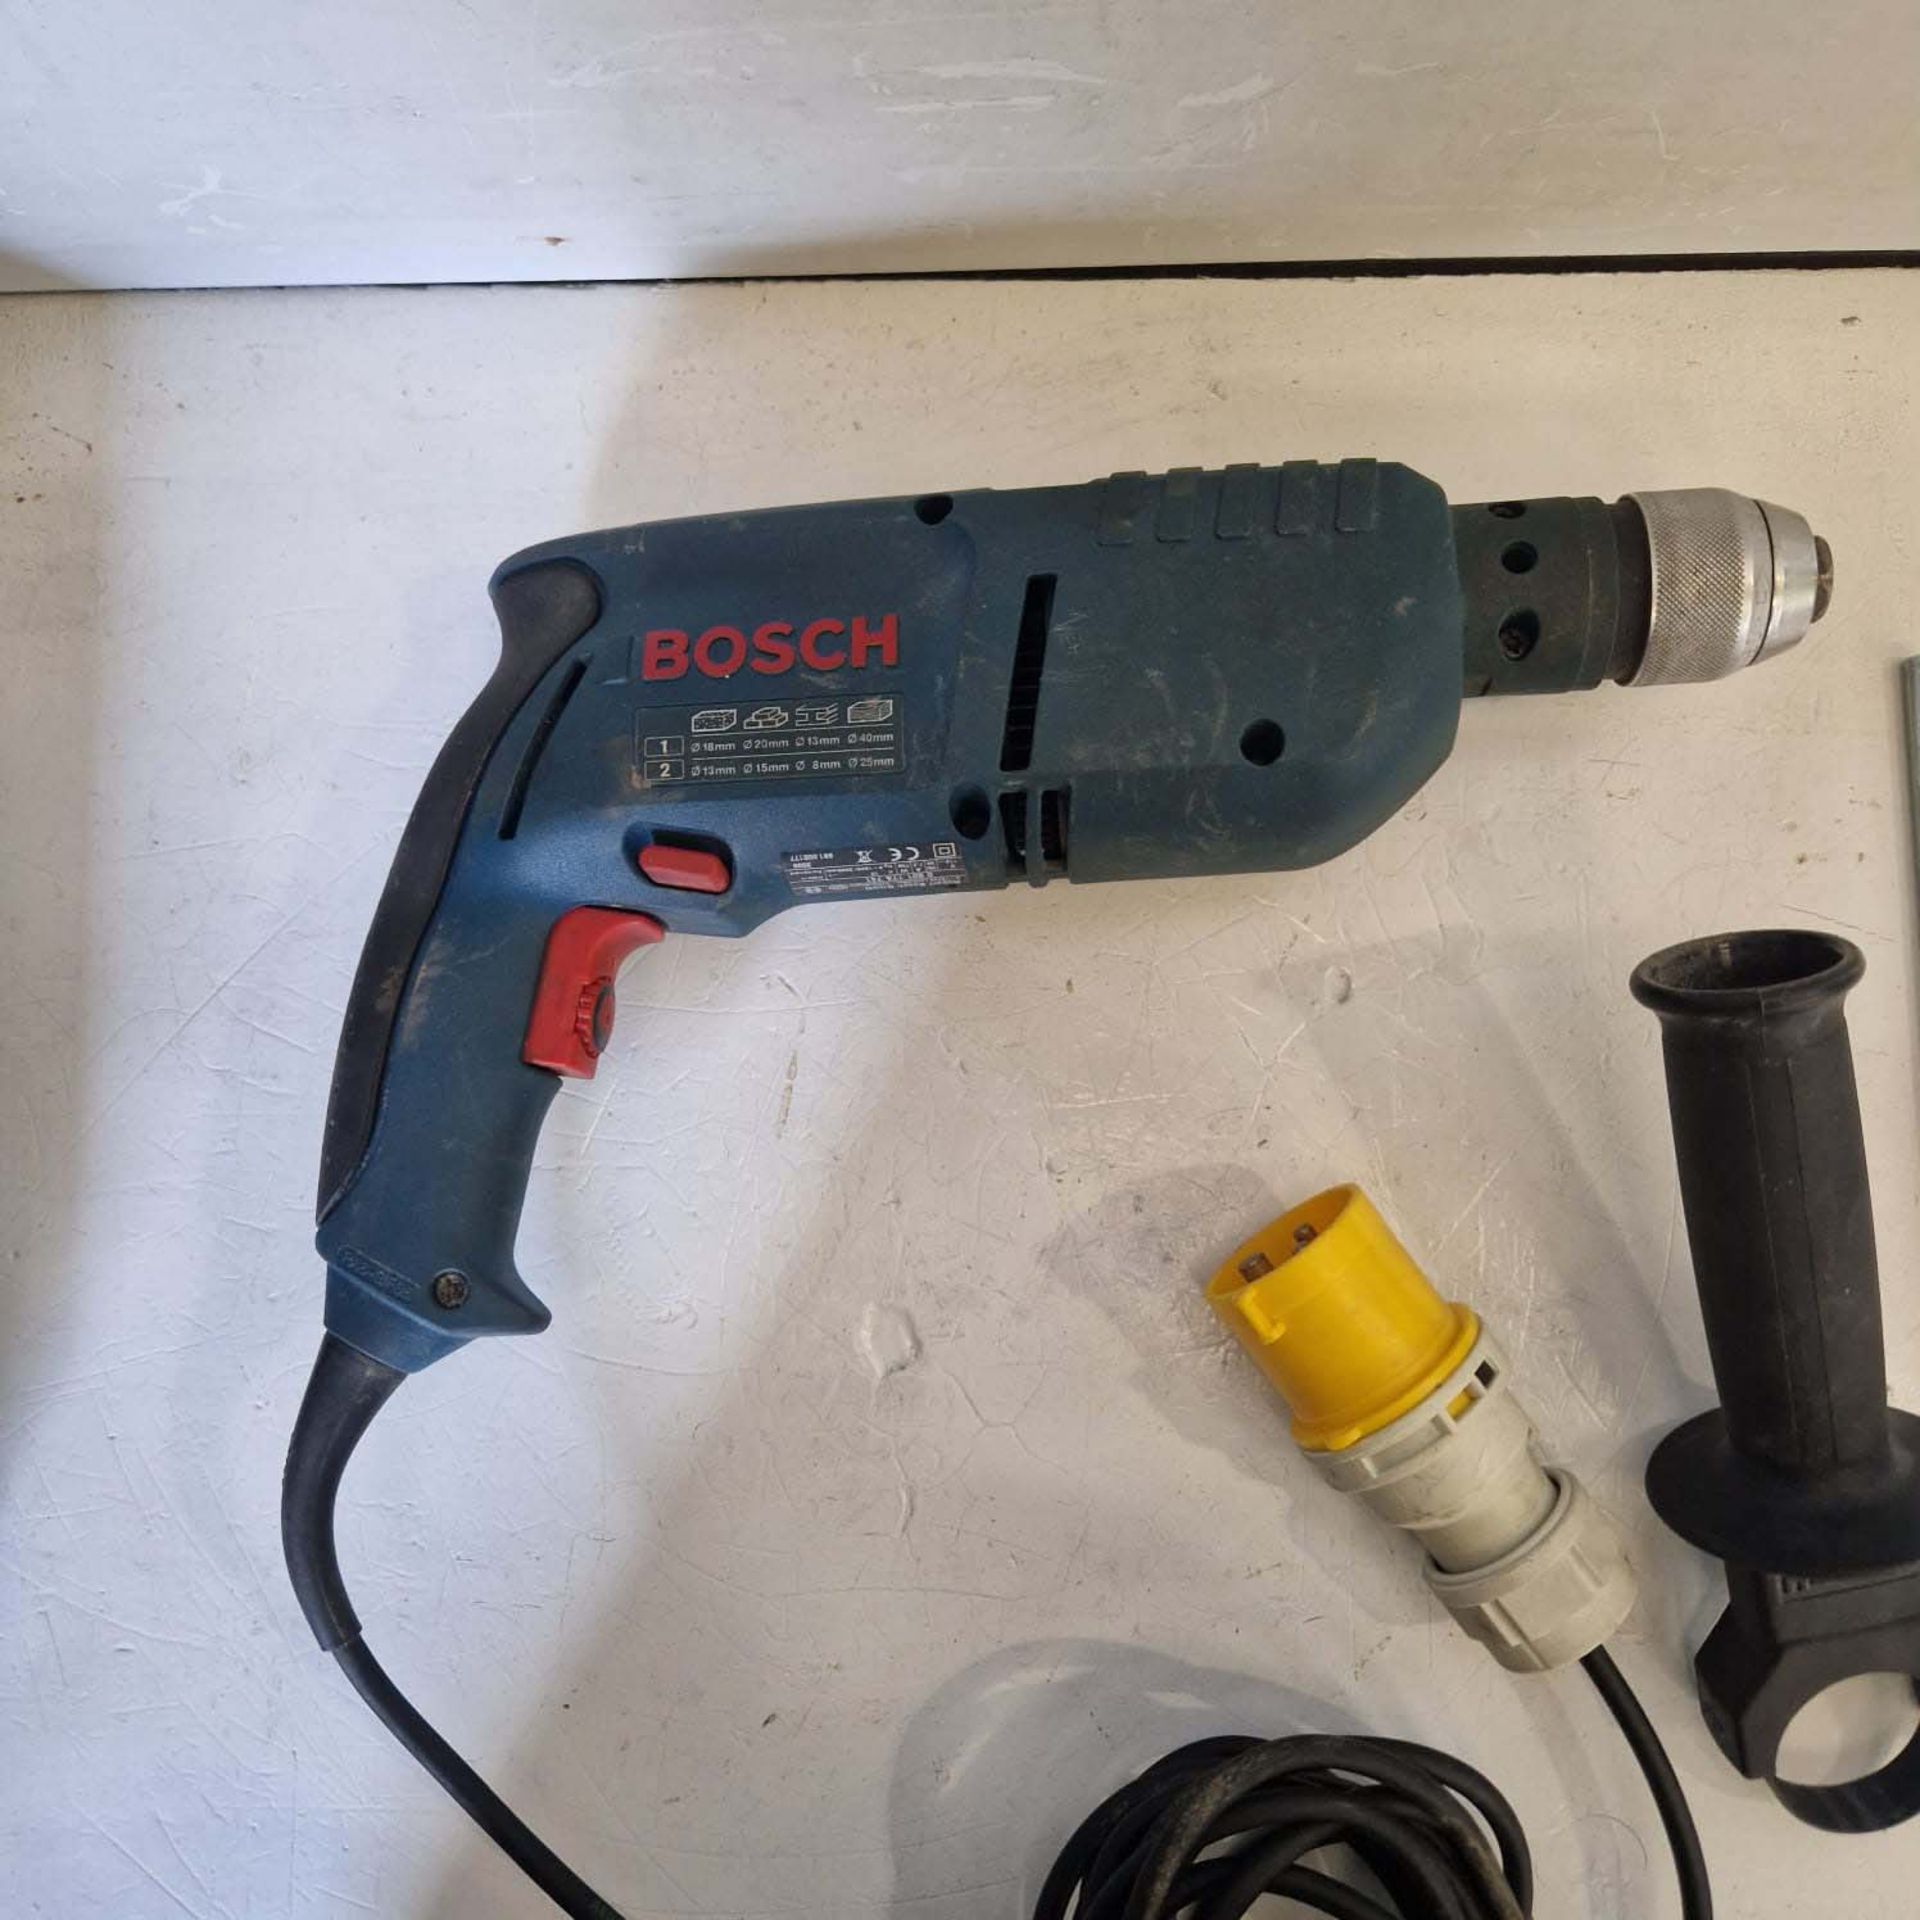 Bosch Professional Hammer Drill 110V Model 6SB 18-2RE. - Image 5 of 9